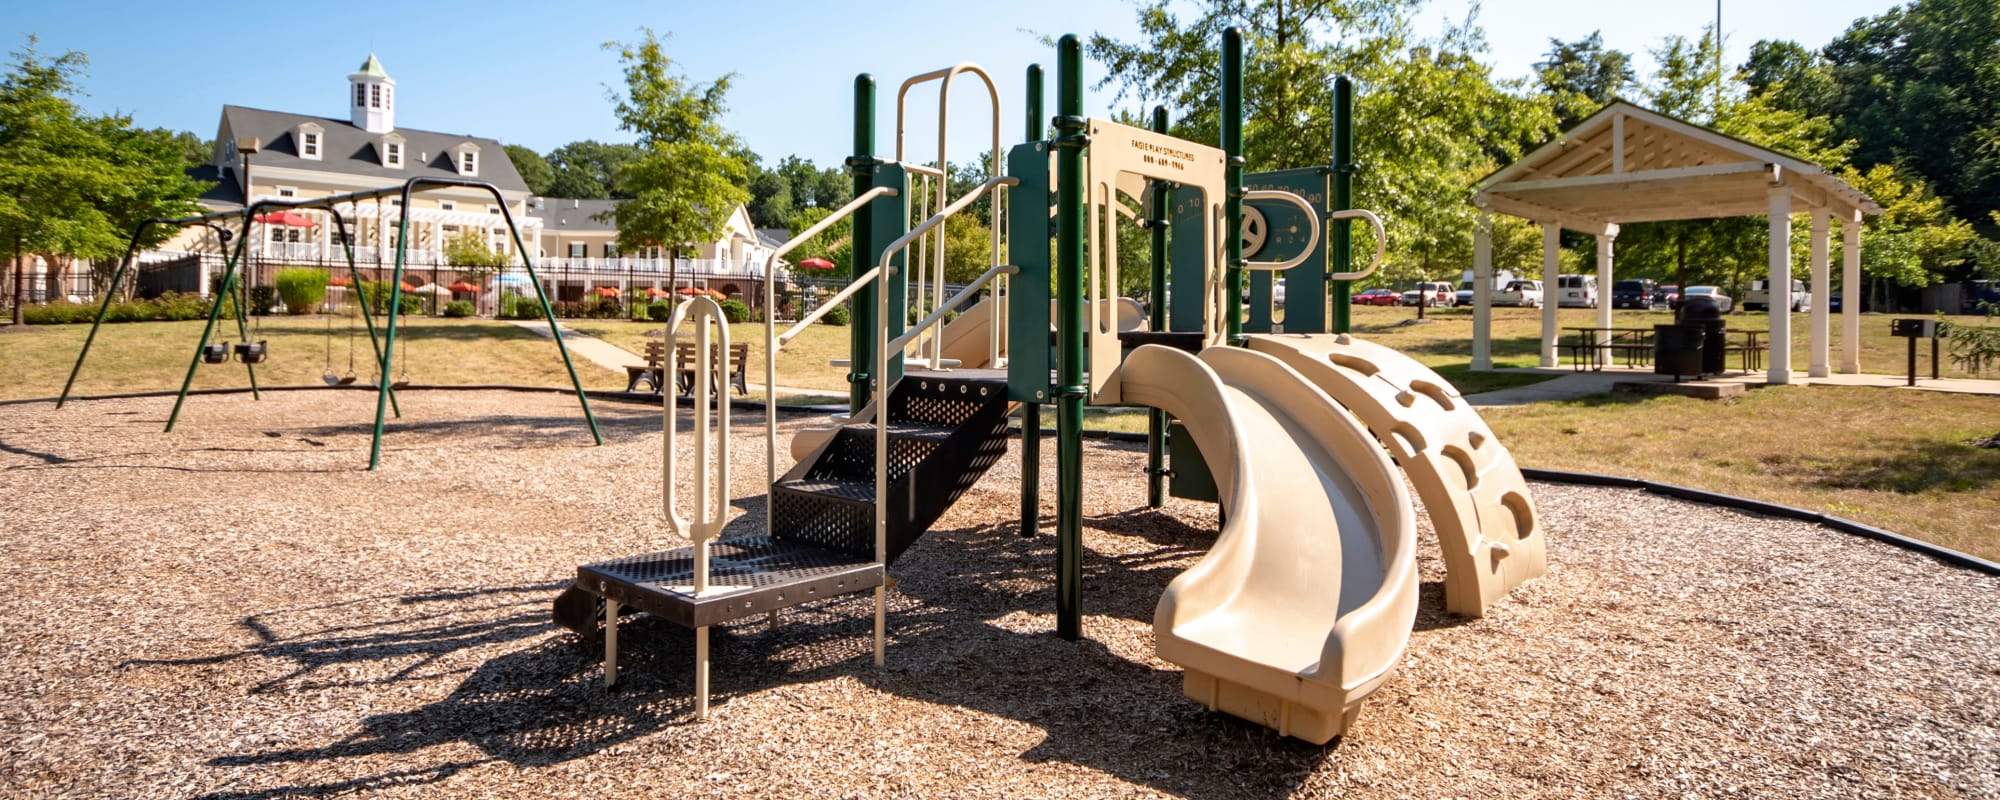 A playground at Thomason Park in Quantico, Virginia